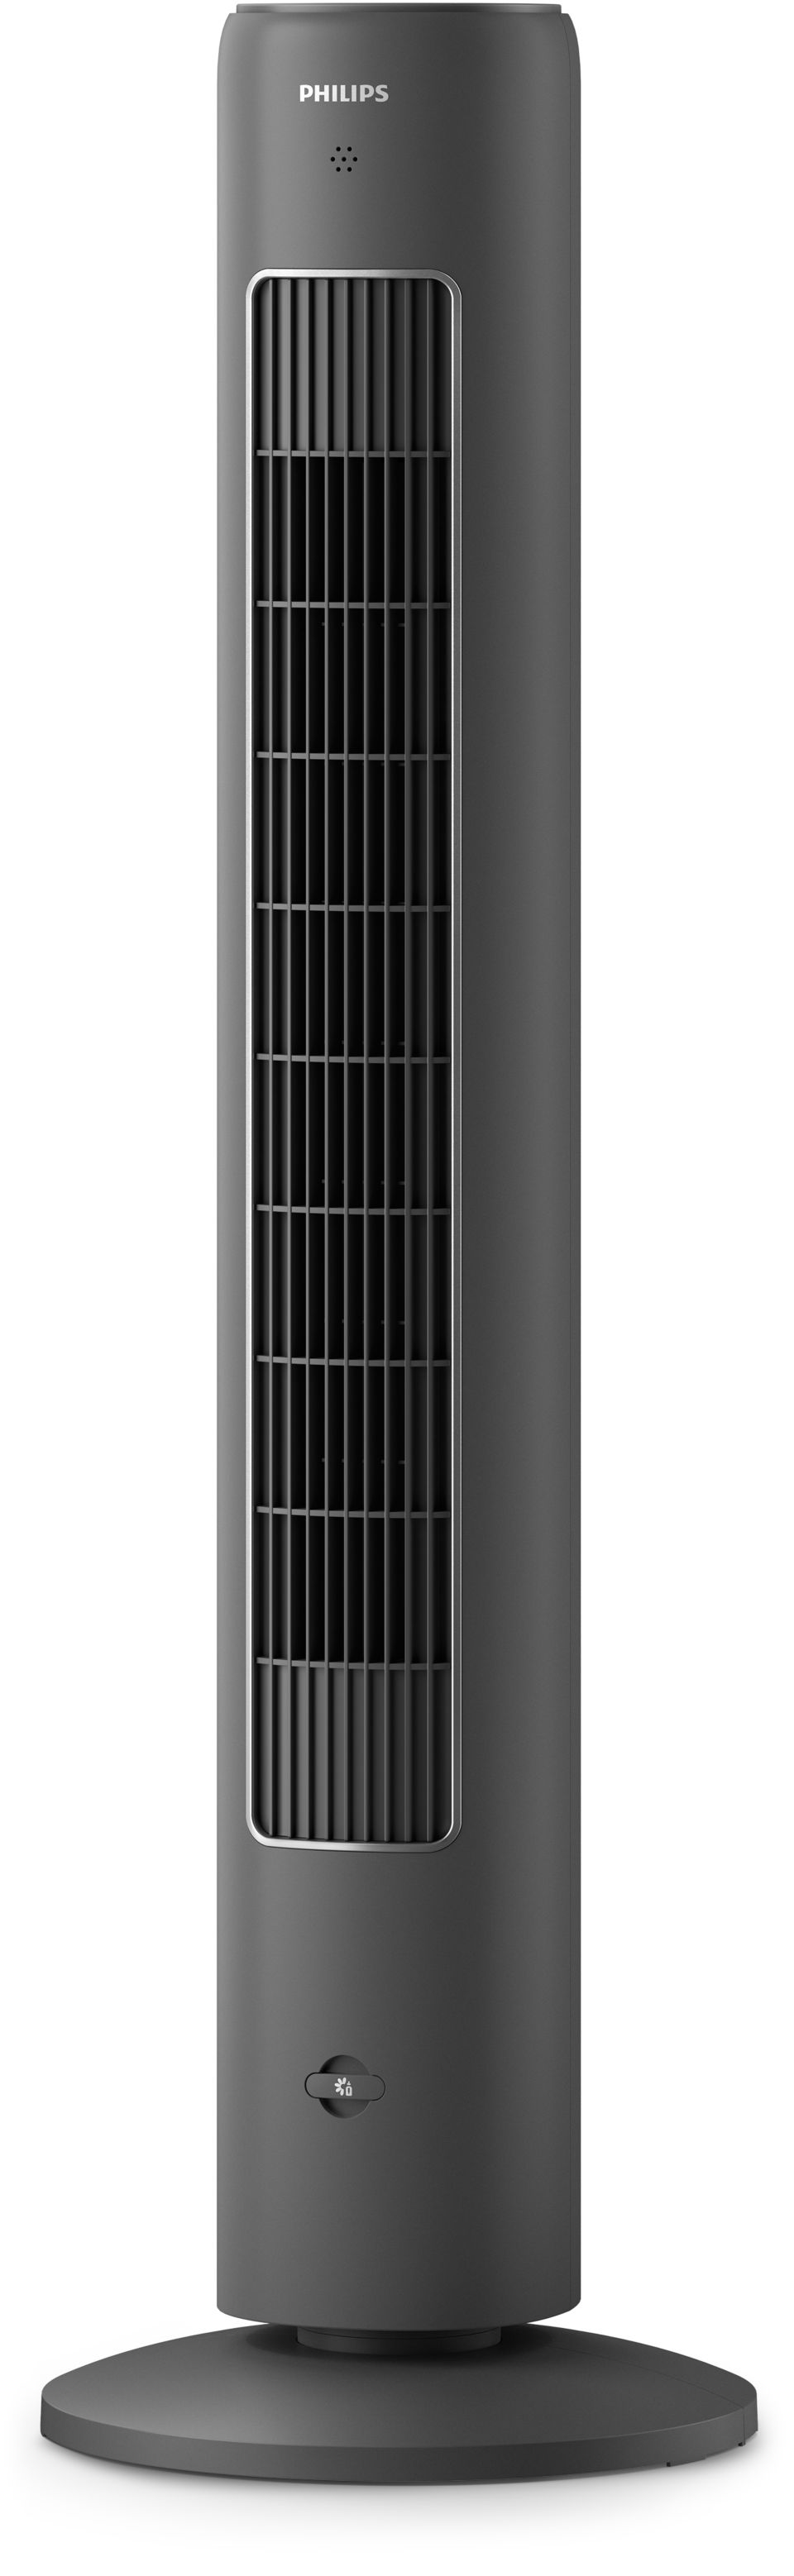 5000 series Tower Fan CX5535/11